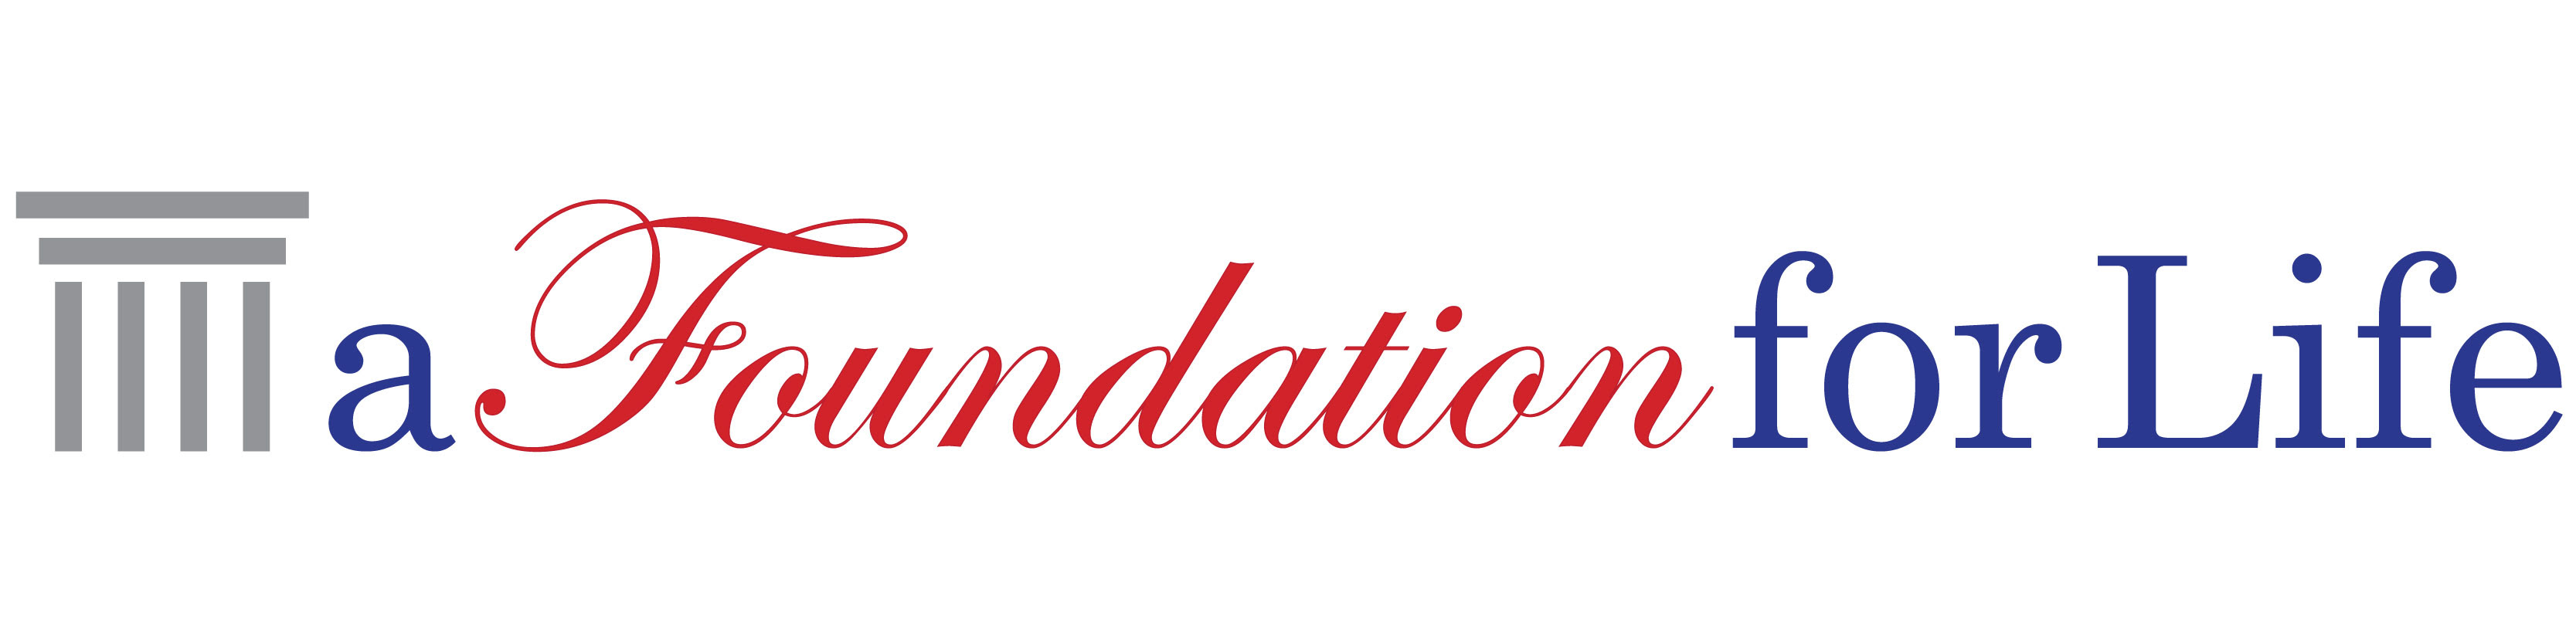 a Foundation for Life logo